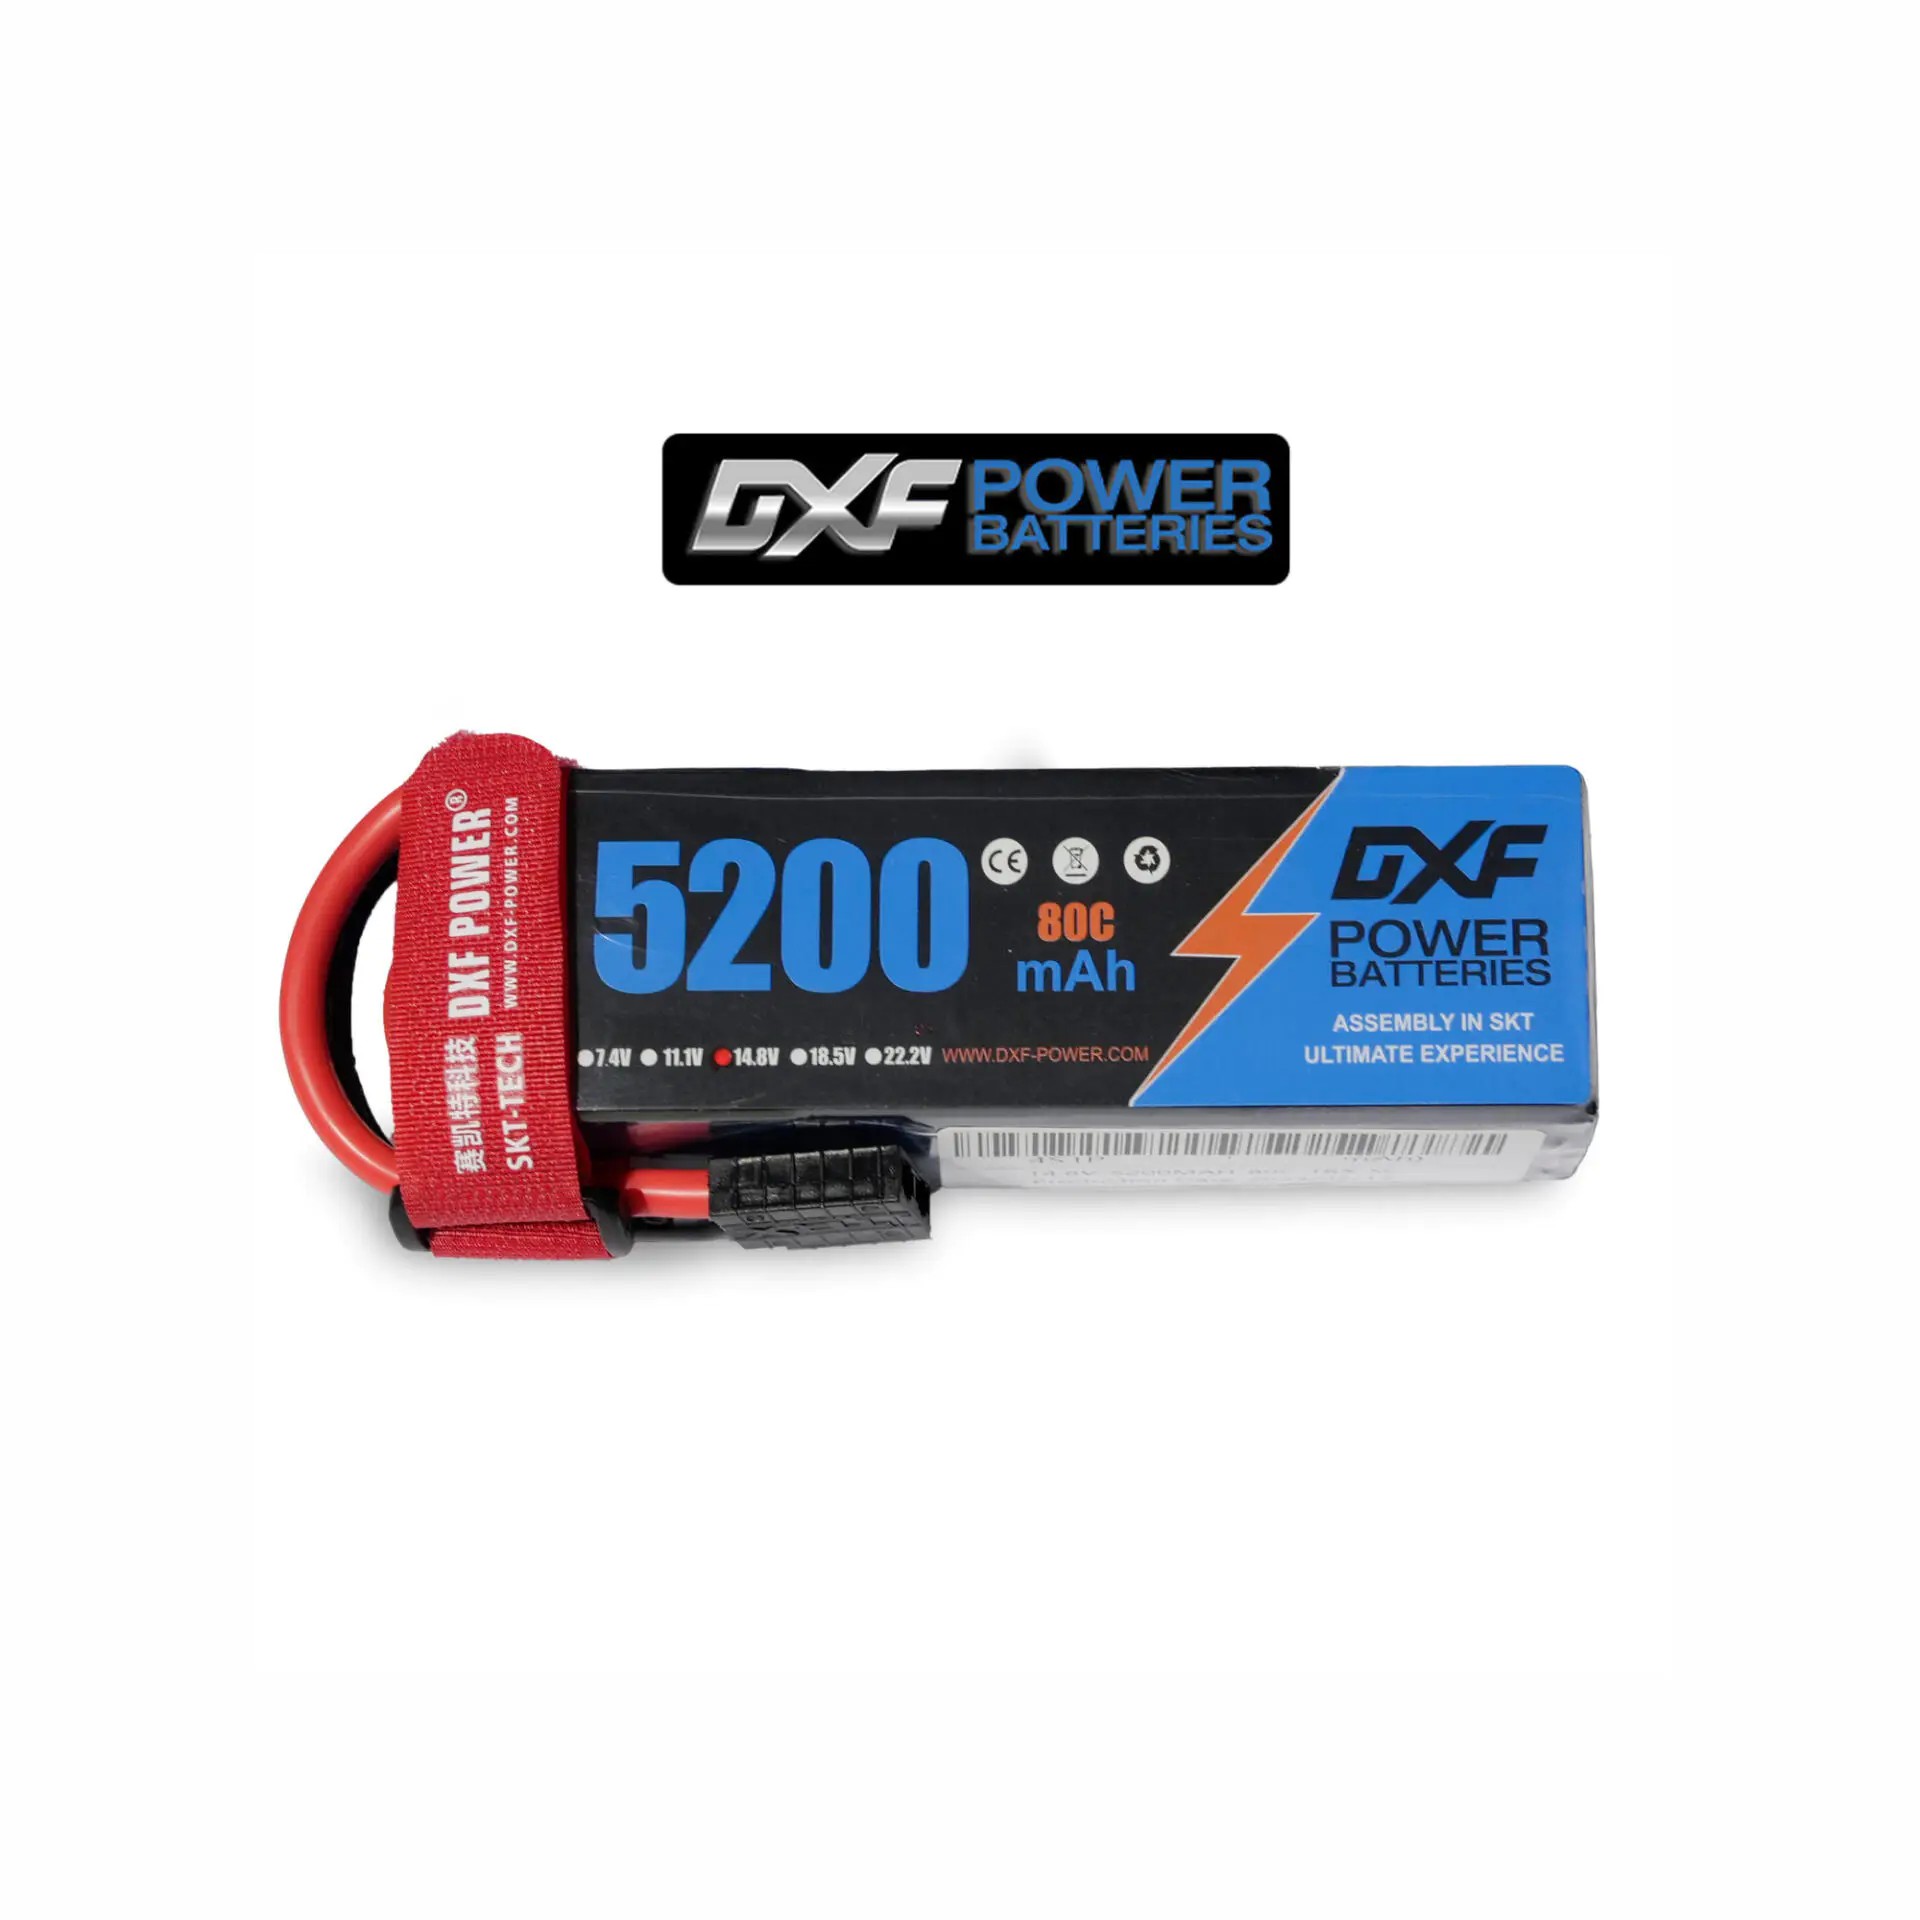 DXF Power 14.8V 4s 5200mAh 80C Softcase Lipo Batarya